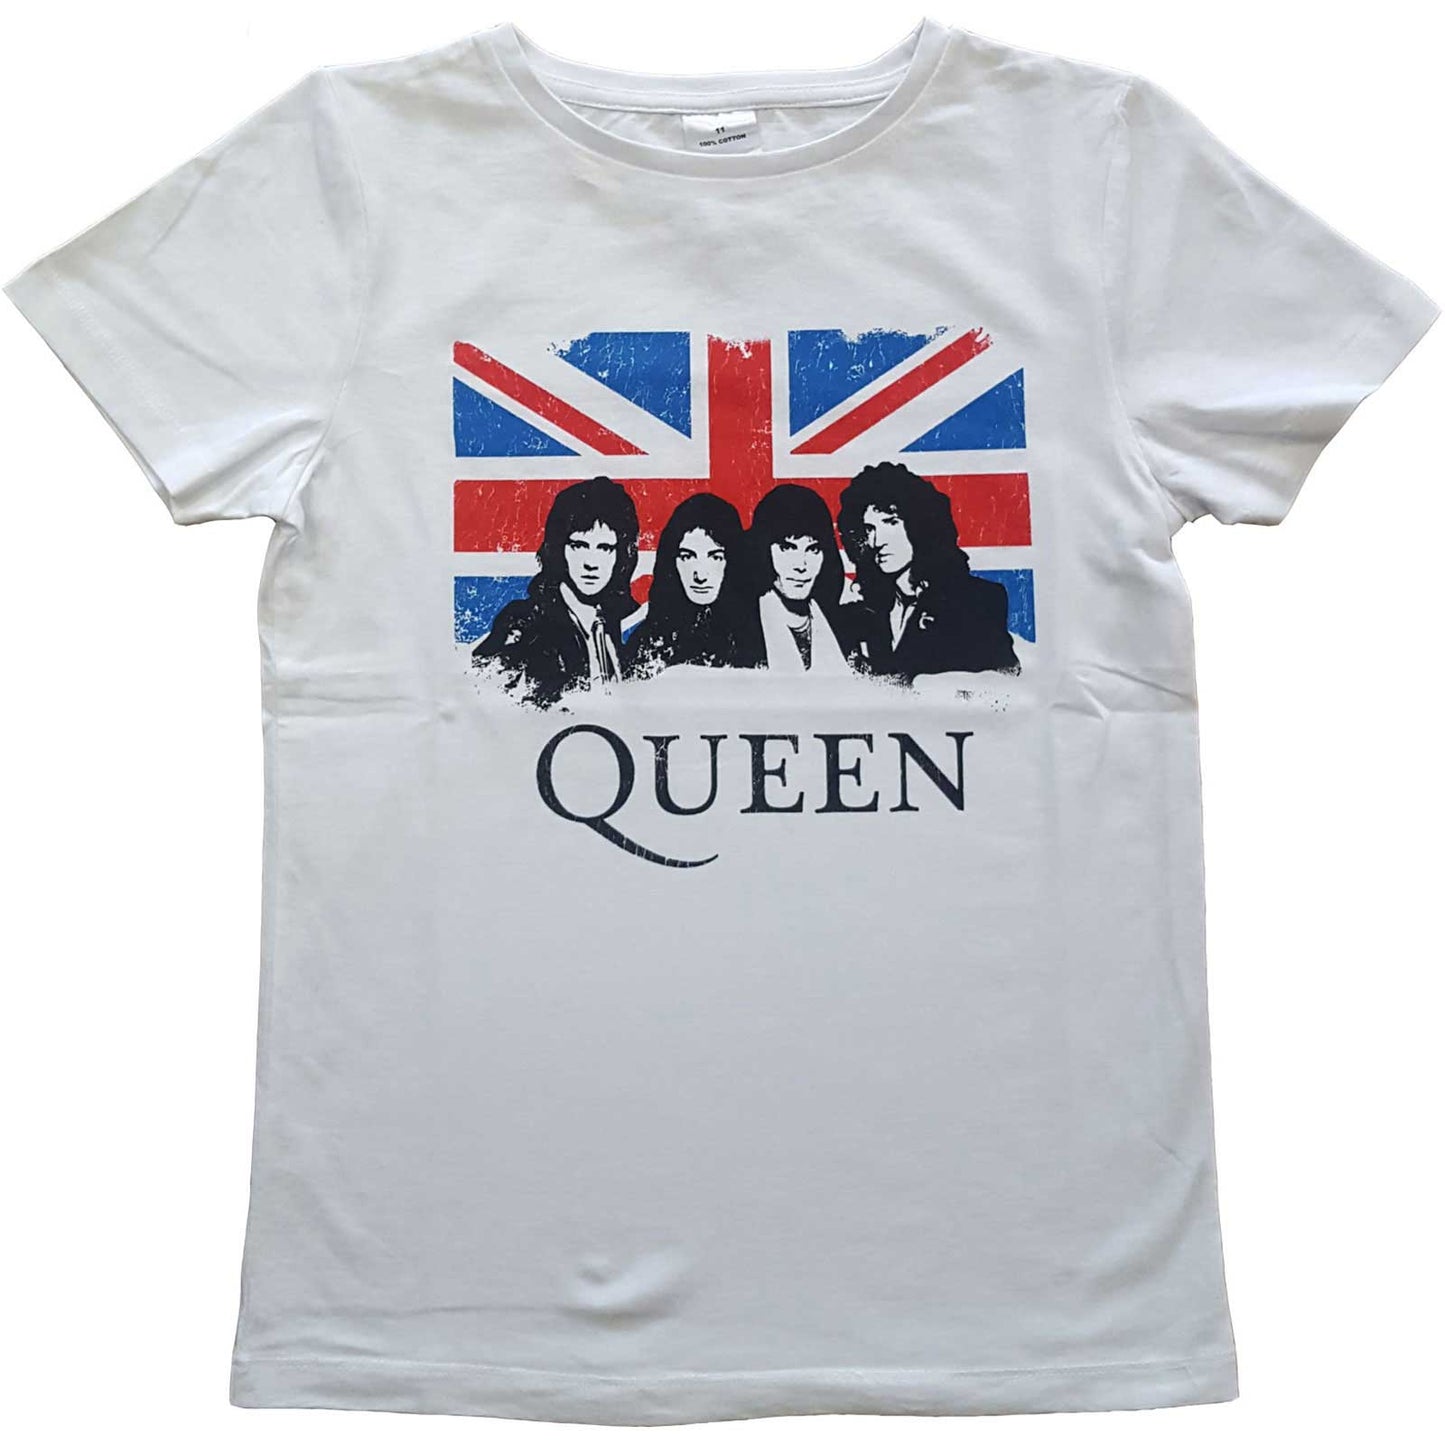 Queen T-Shirt: Vintage Union Jack